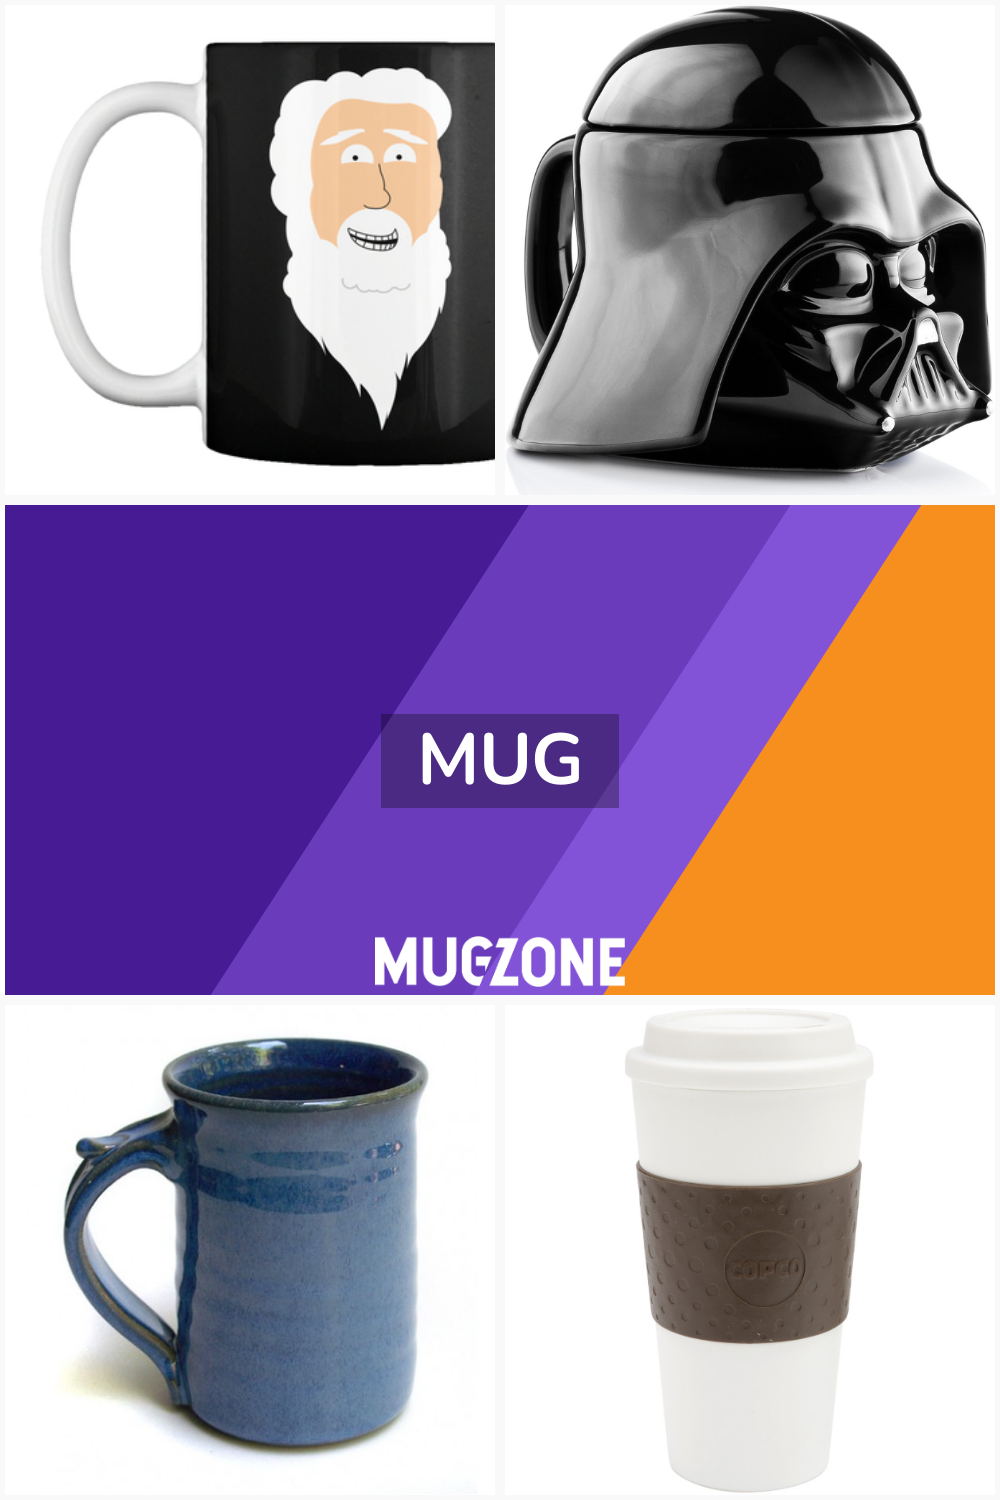 Mug // Mug Zone